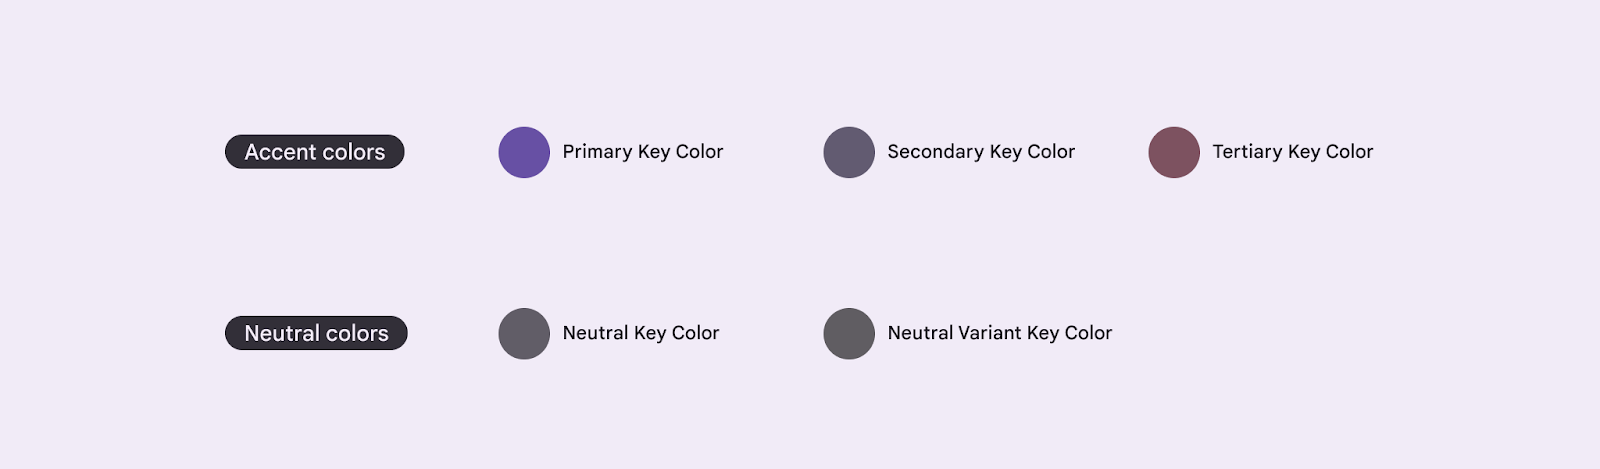 Пять базовых ключевых цветов для создания темы M3.